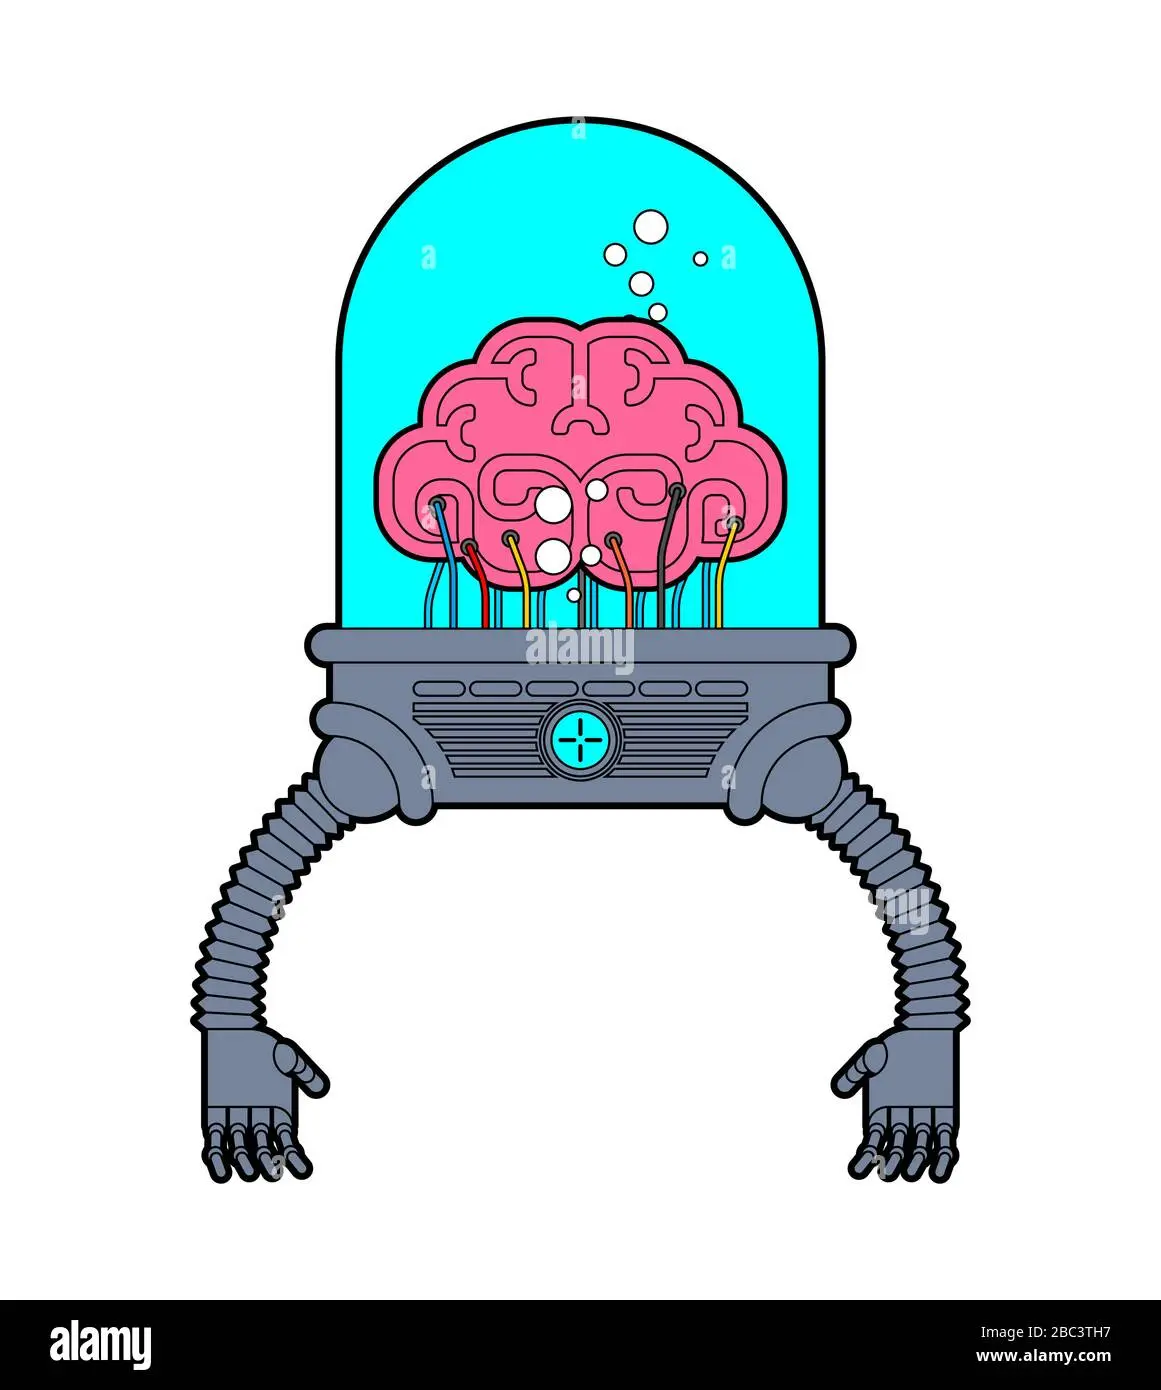 cerebro robot inteligencia artificial - Qué es cerebro robótico